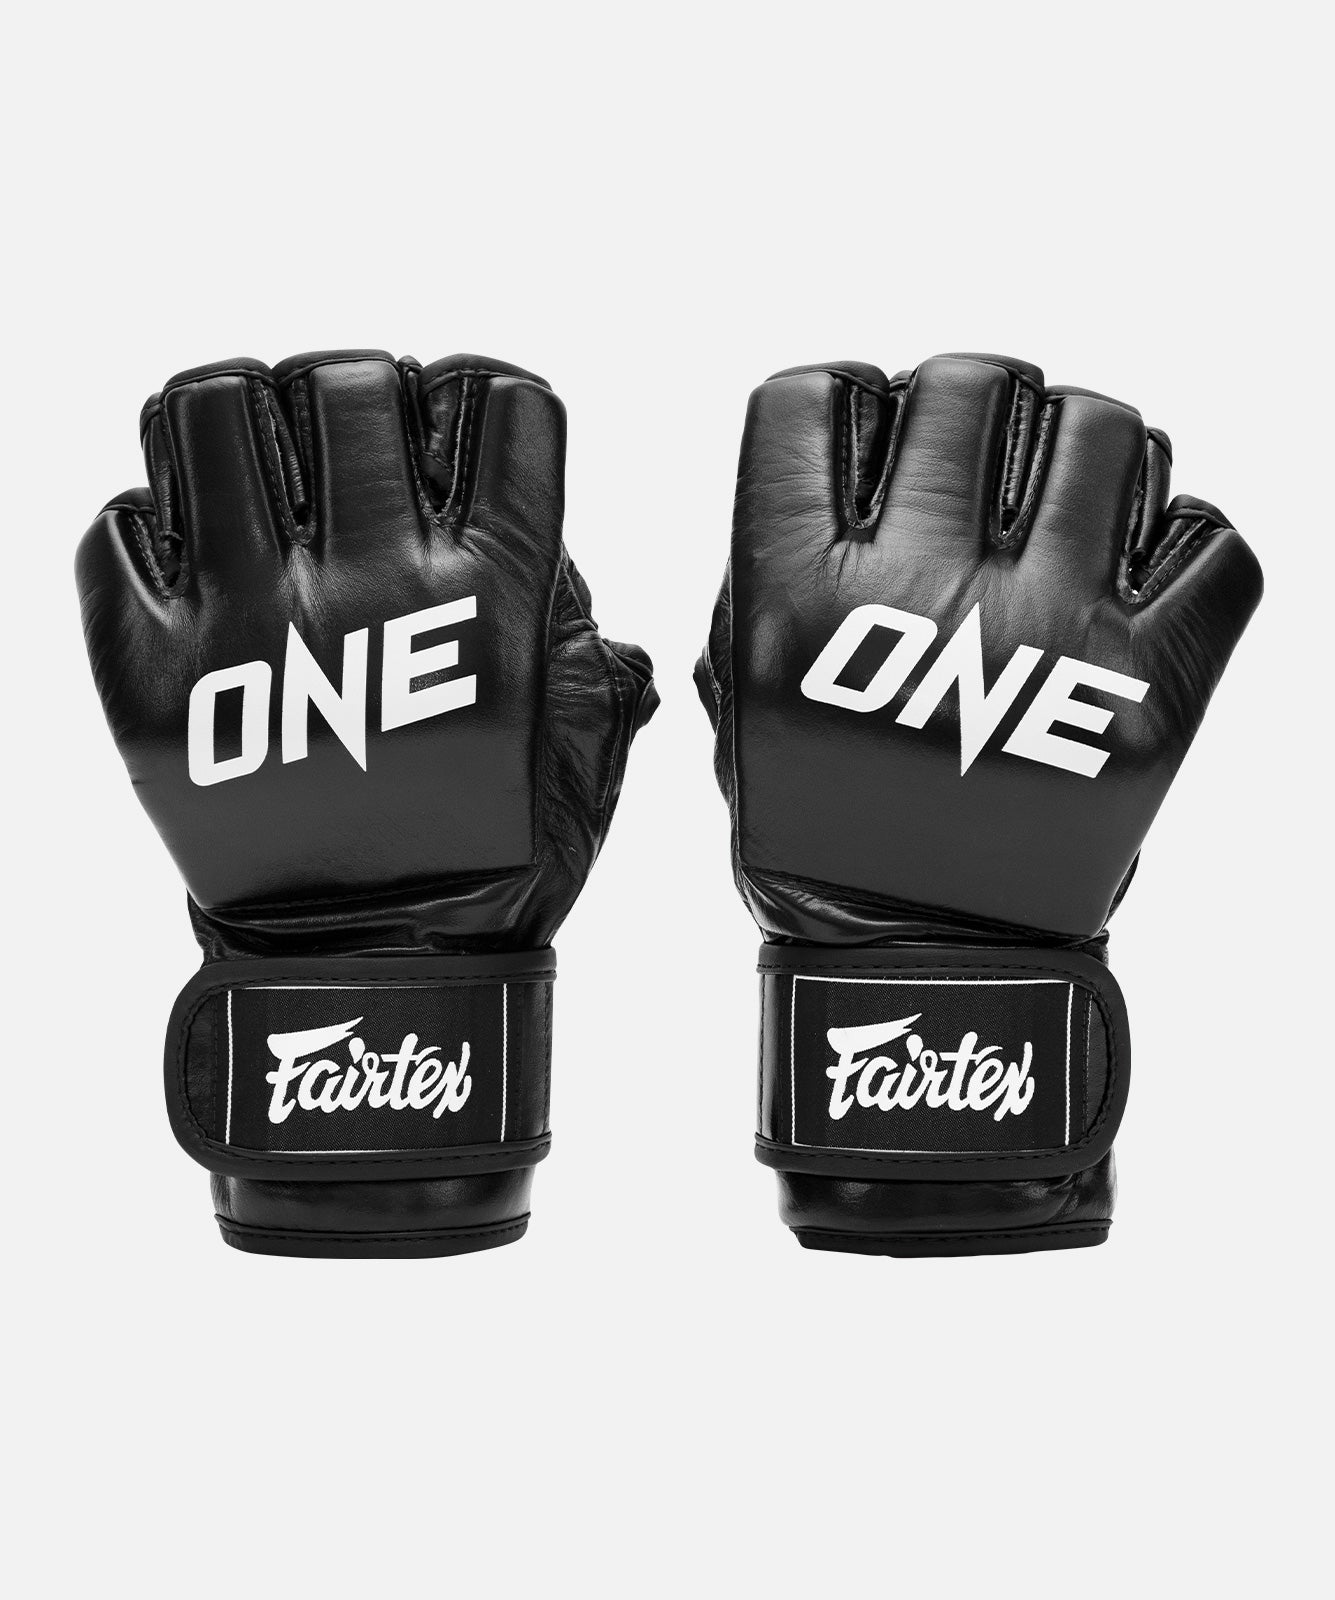 ufc gloves online